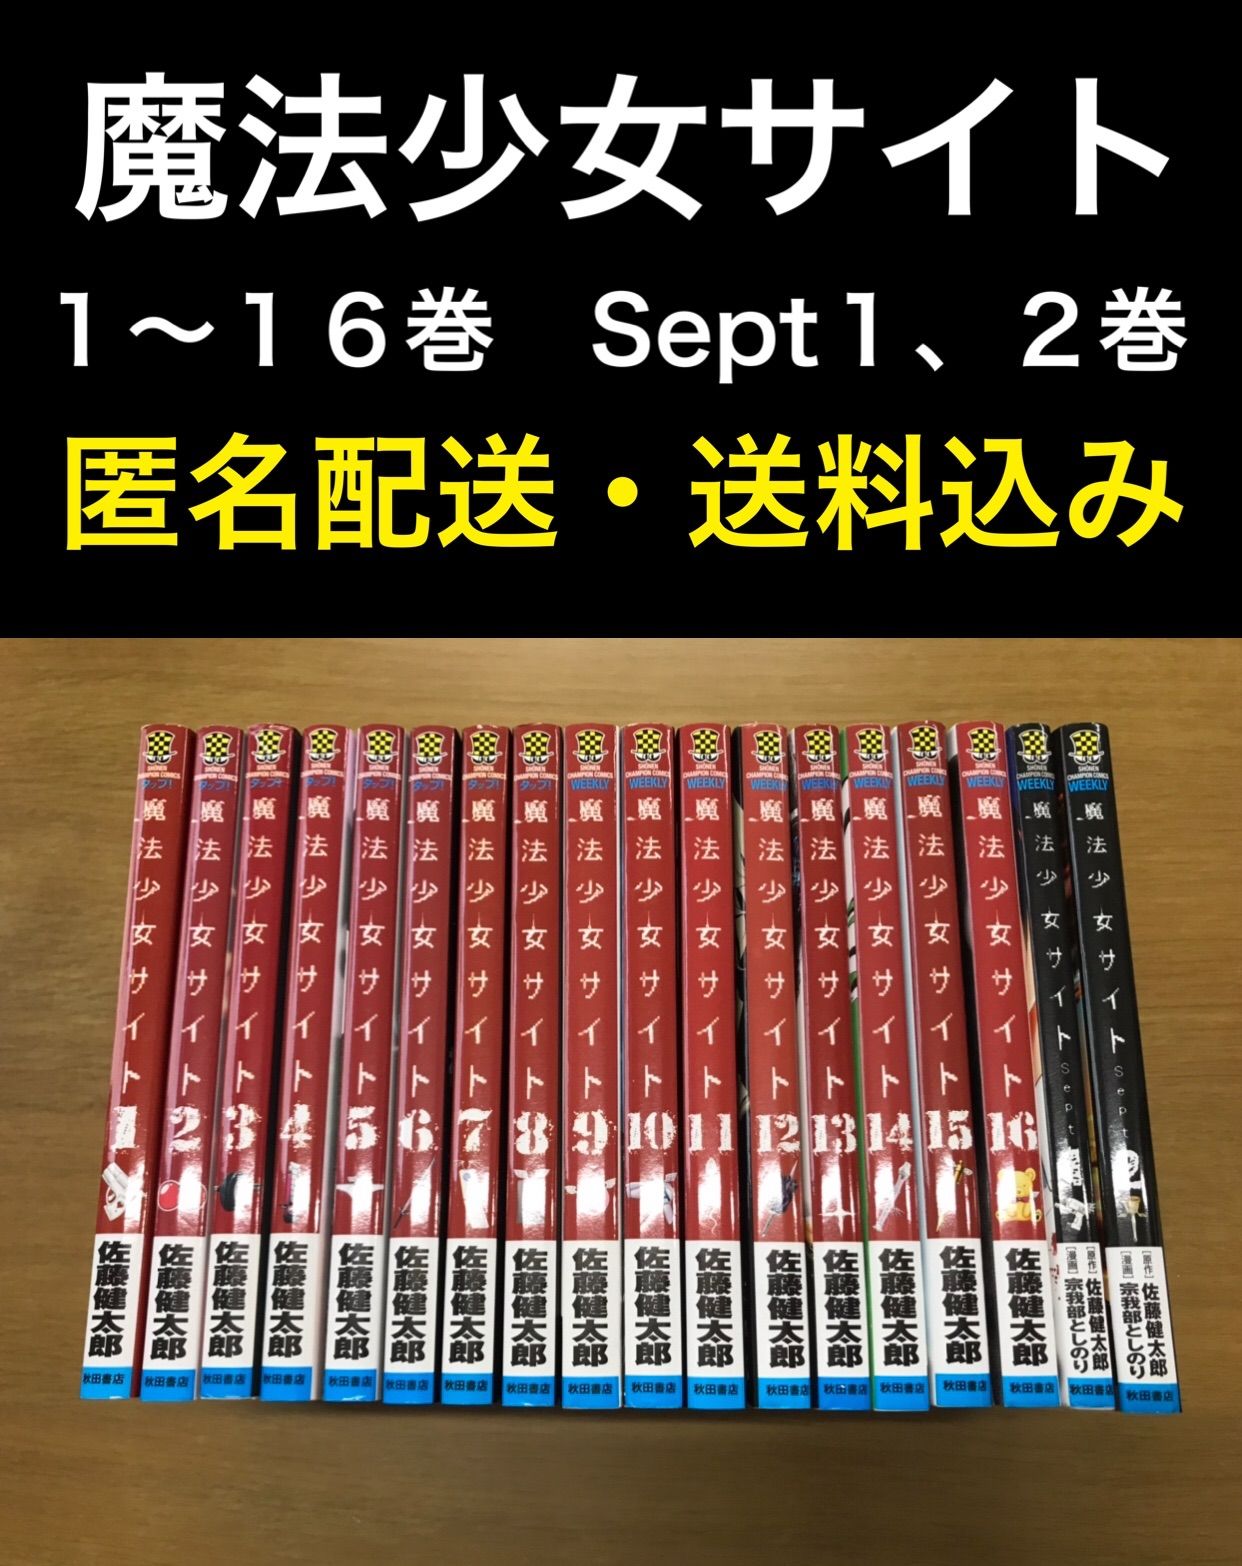 魔法少女サイト 1〜16巻 Sept 1〜2巻 - メルカリ